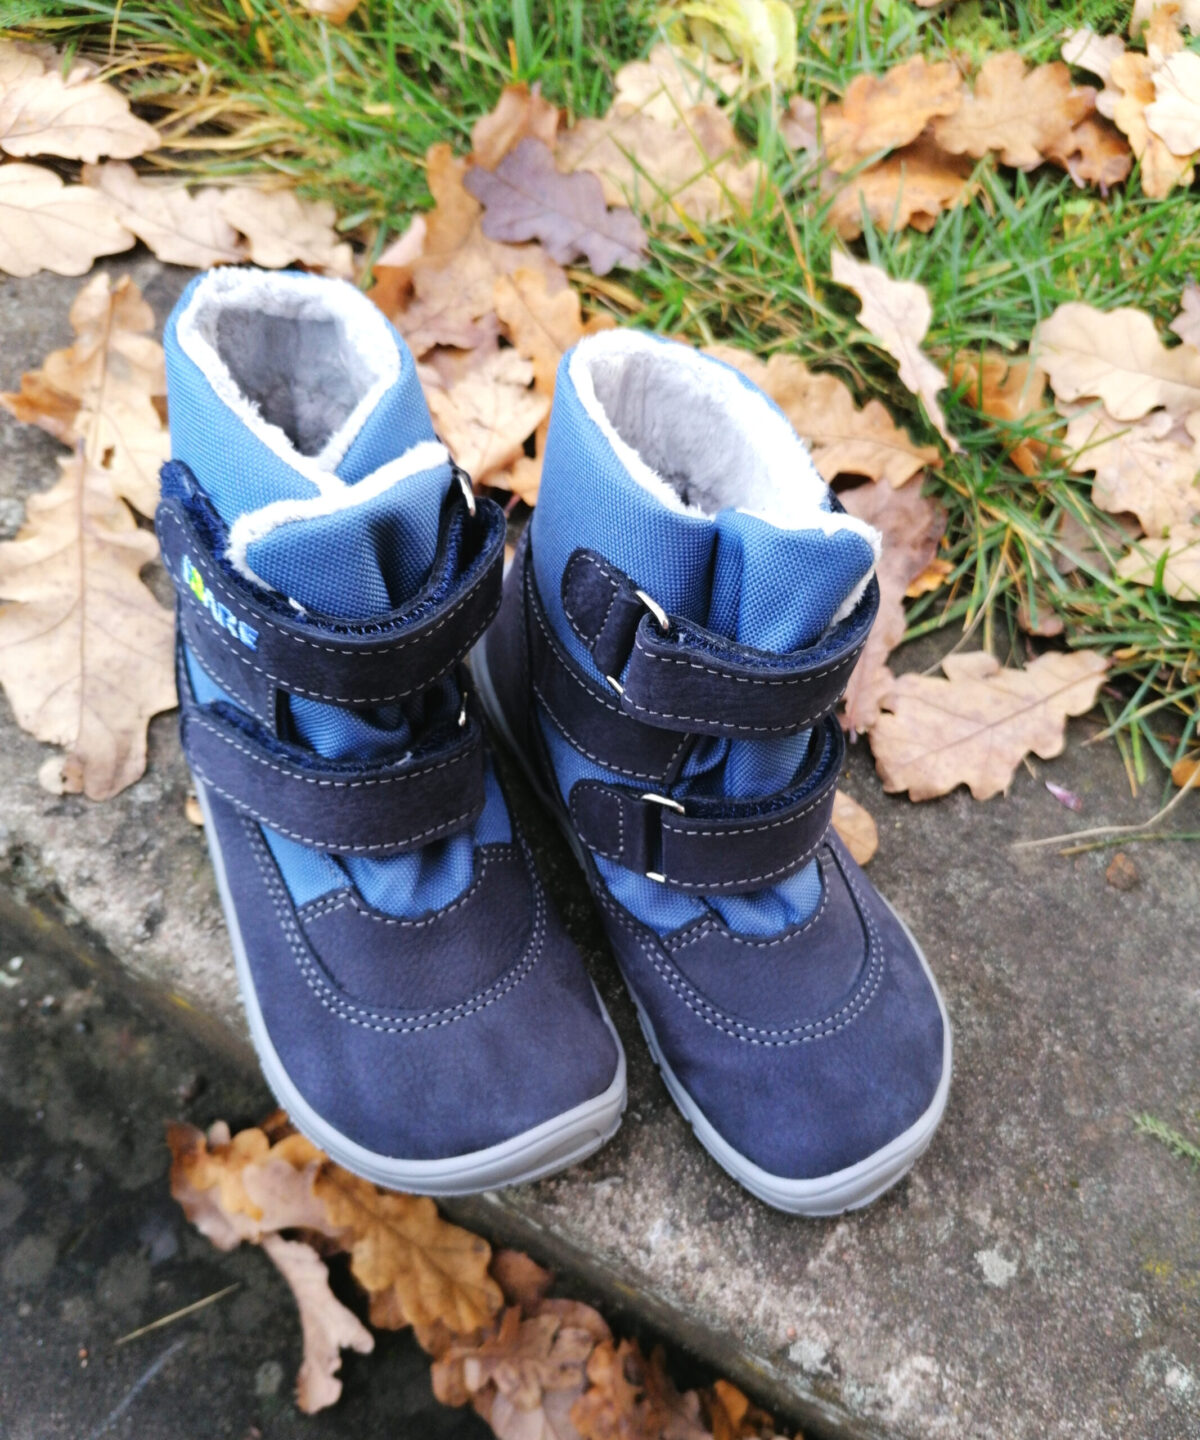 Fare Bare talvesaapad membraaniga, Sinine 33-42 Laste barefoot jalatsid - HellyK - Kvaliteetsed lasteriided, villariided, barefoot jalatsid